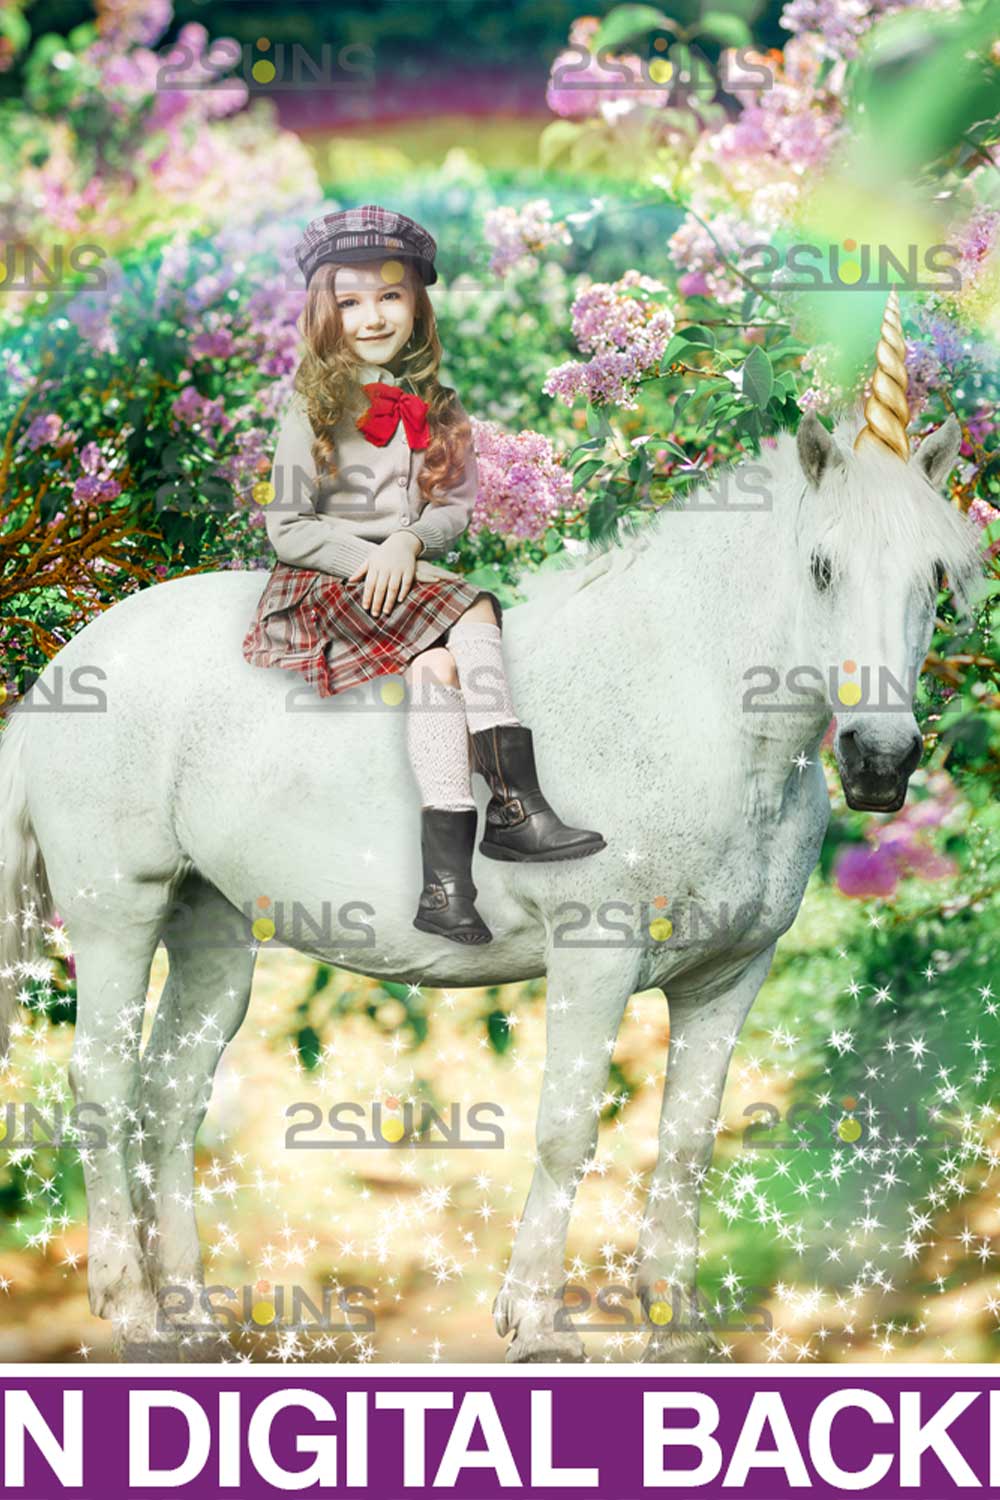 Unicorn Digital Background Overlay Pinterest Image.